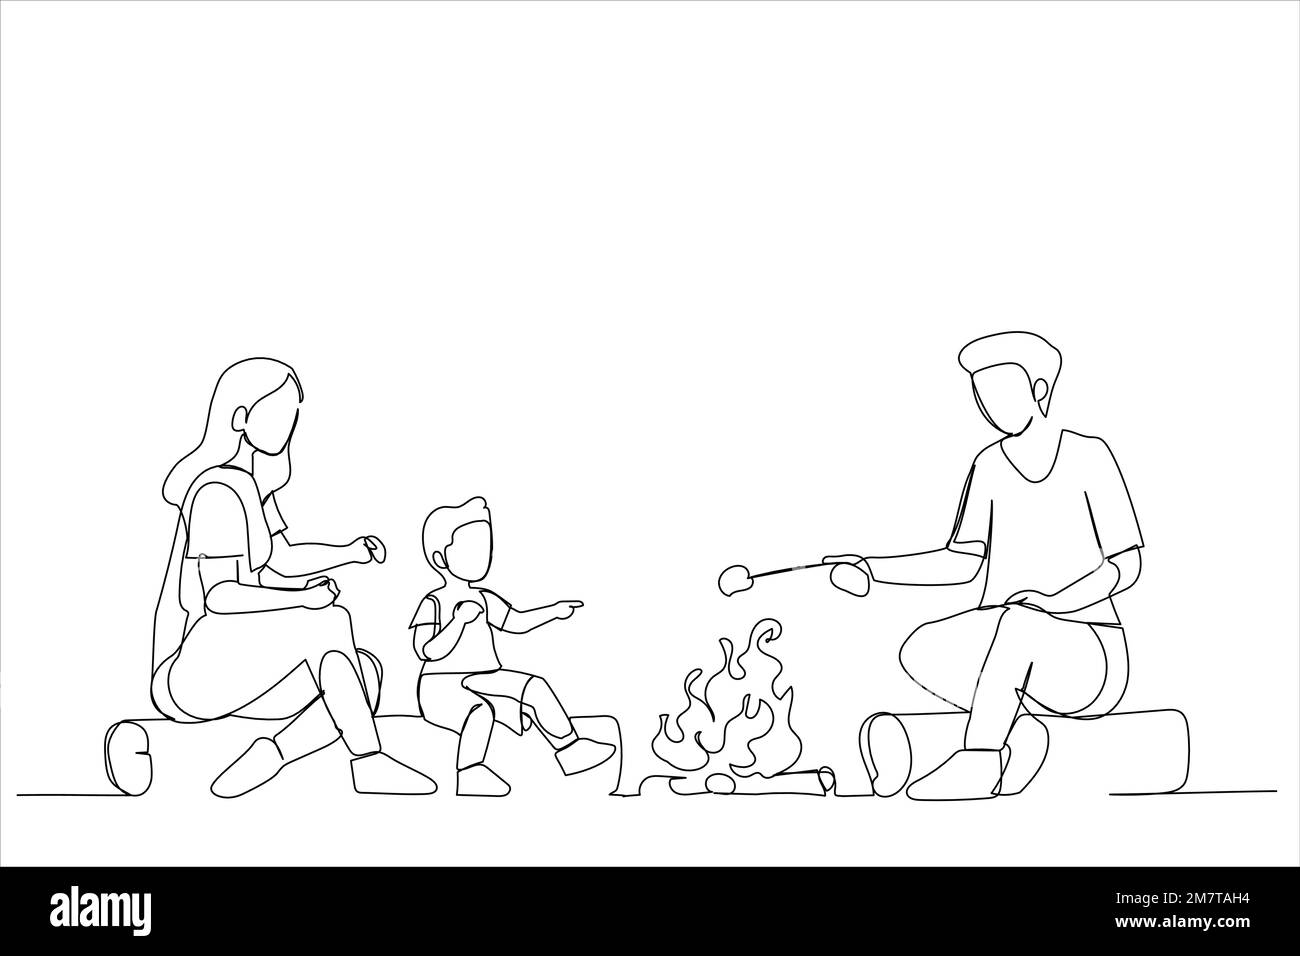 Illustrazione della famiglia seduta al fuoco insieme, canto, chitarra, marshmallows al fuoco. Un'arte di stile Illustrazione Vettoriale